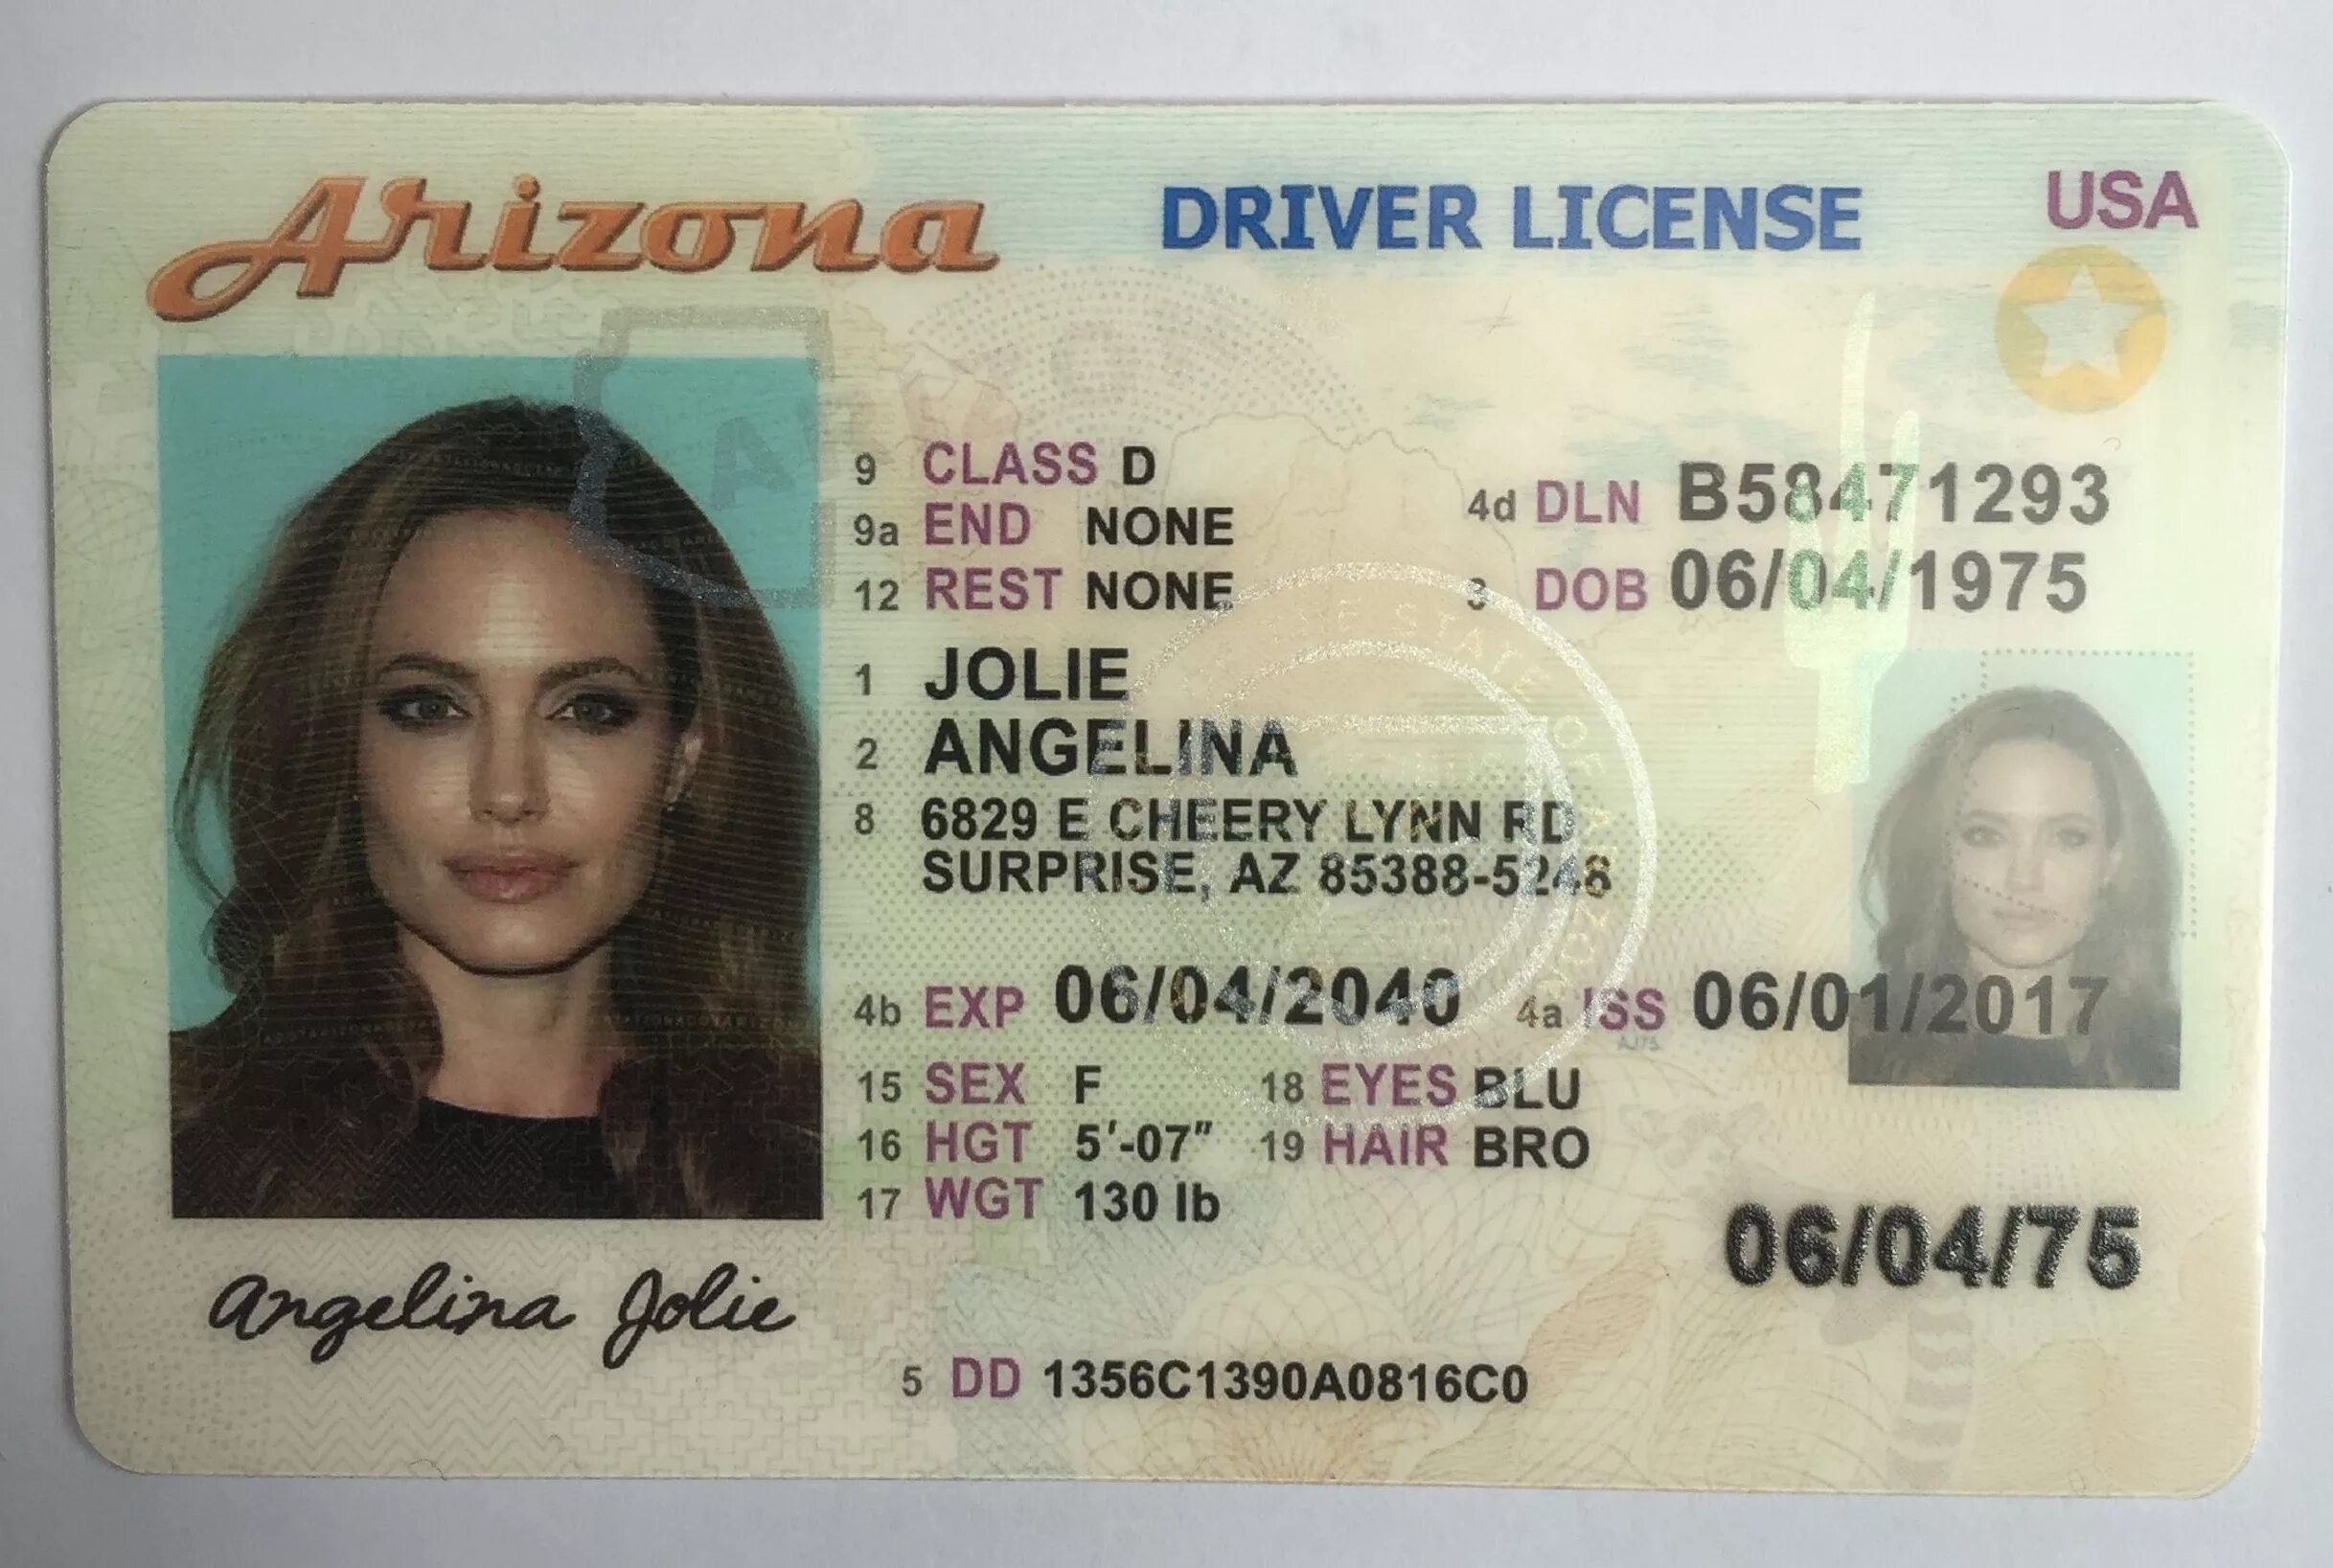 License us. Американский ID. ID Card США.